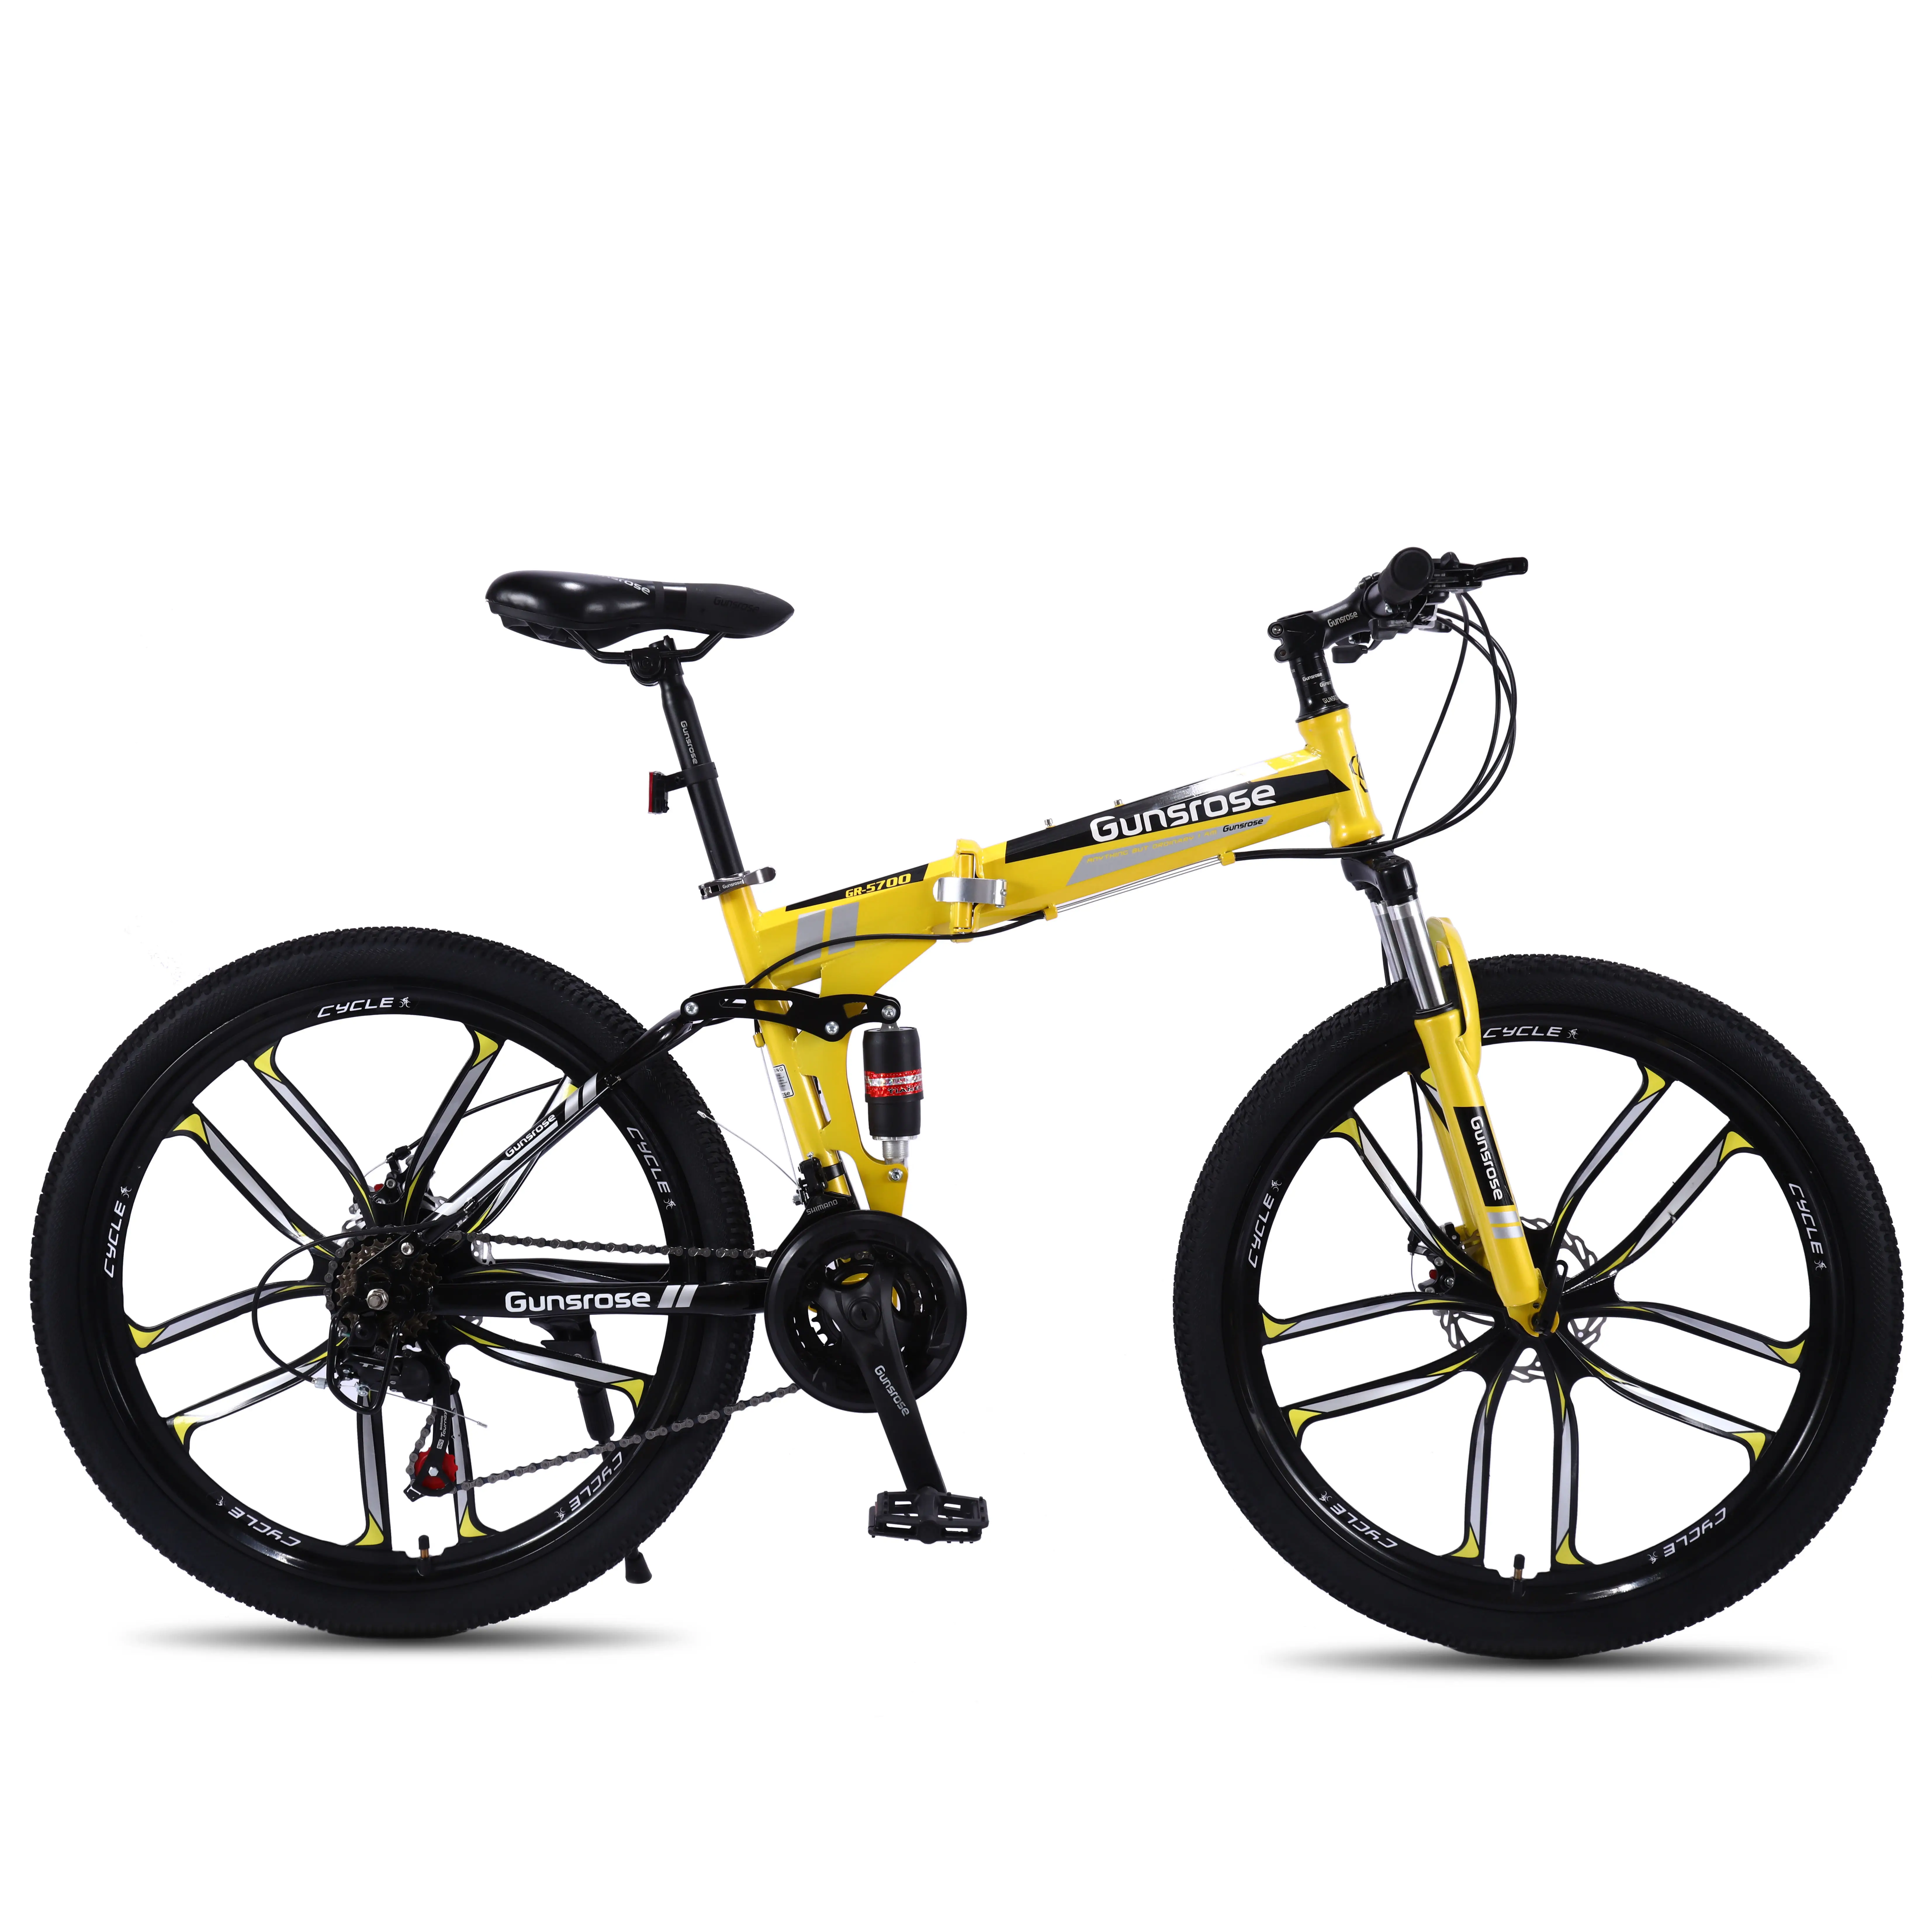 높은 탄소 강철 알루미늄 합금 26 인치 더블 디스크 브레이크 접이식 도로 자전거 성인 산악 자전거 액세서리